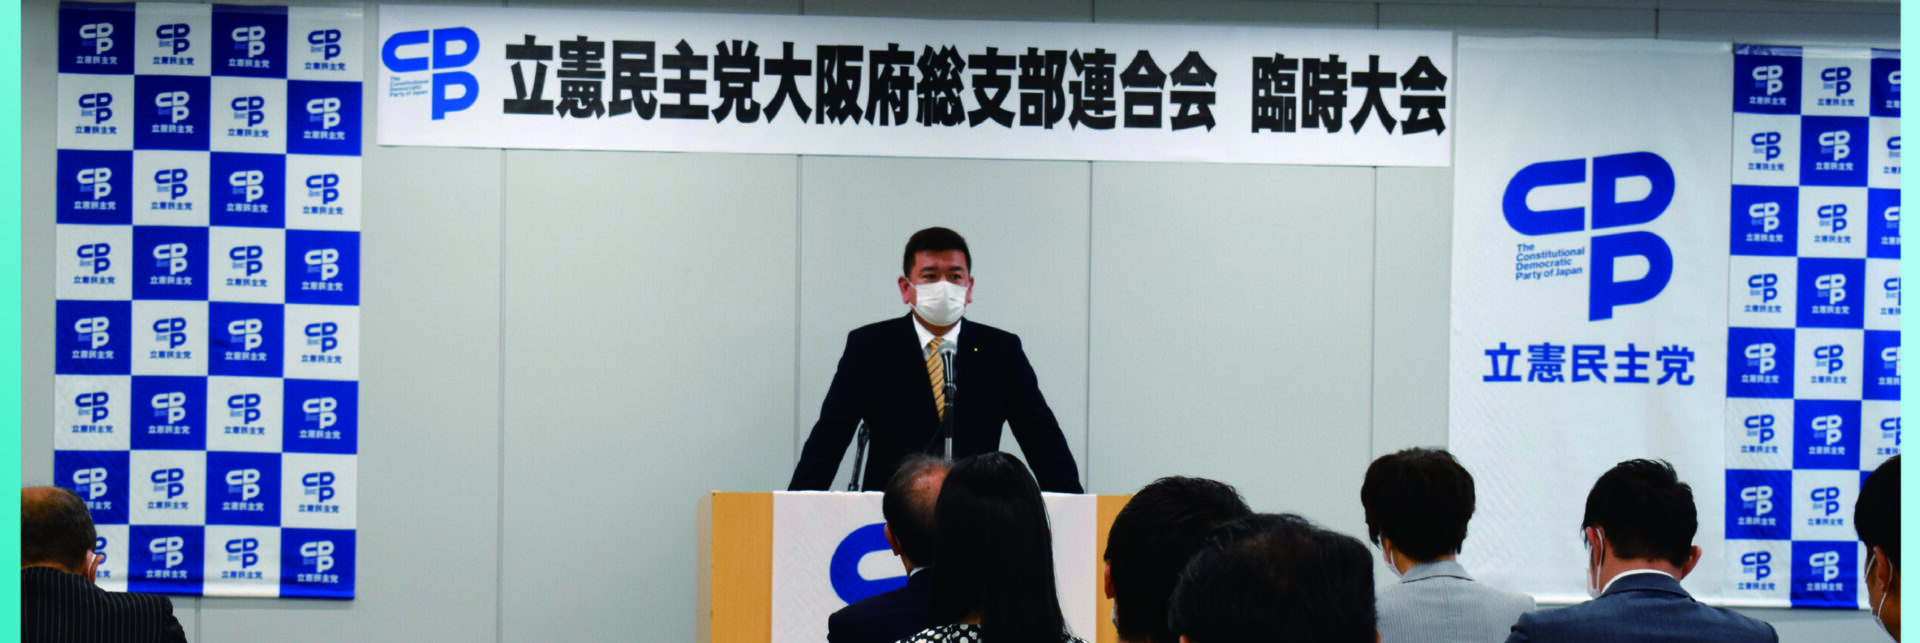 立憲民主党大阪府連は新たな代表と幹事長を選出致しました。